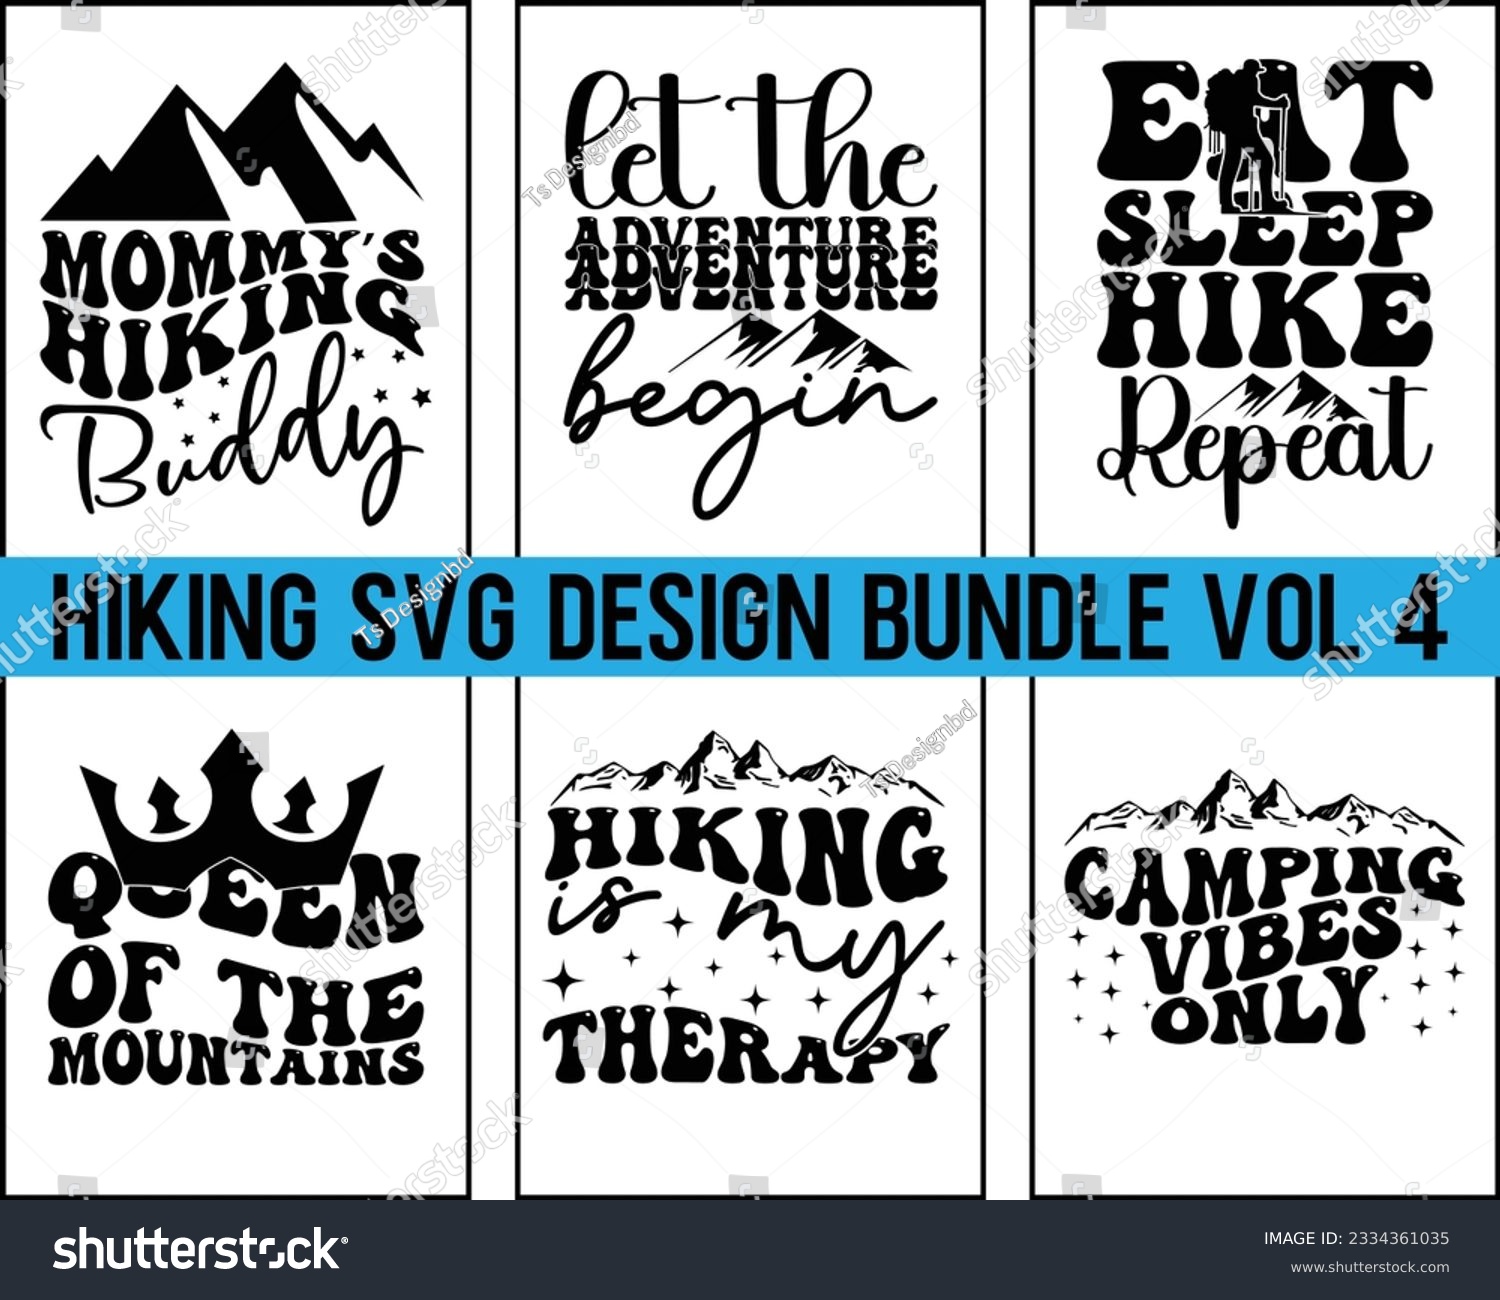 SVG of Hiking Svg Design Bundle Vol 4,Hiking Svg Design, Mountain illustration, outdoor adventure ,Outdoor Adventure Inspiring Motivation Quote,camping shirt, camping, hiking,Groovy Font Design svg